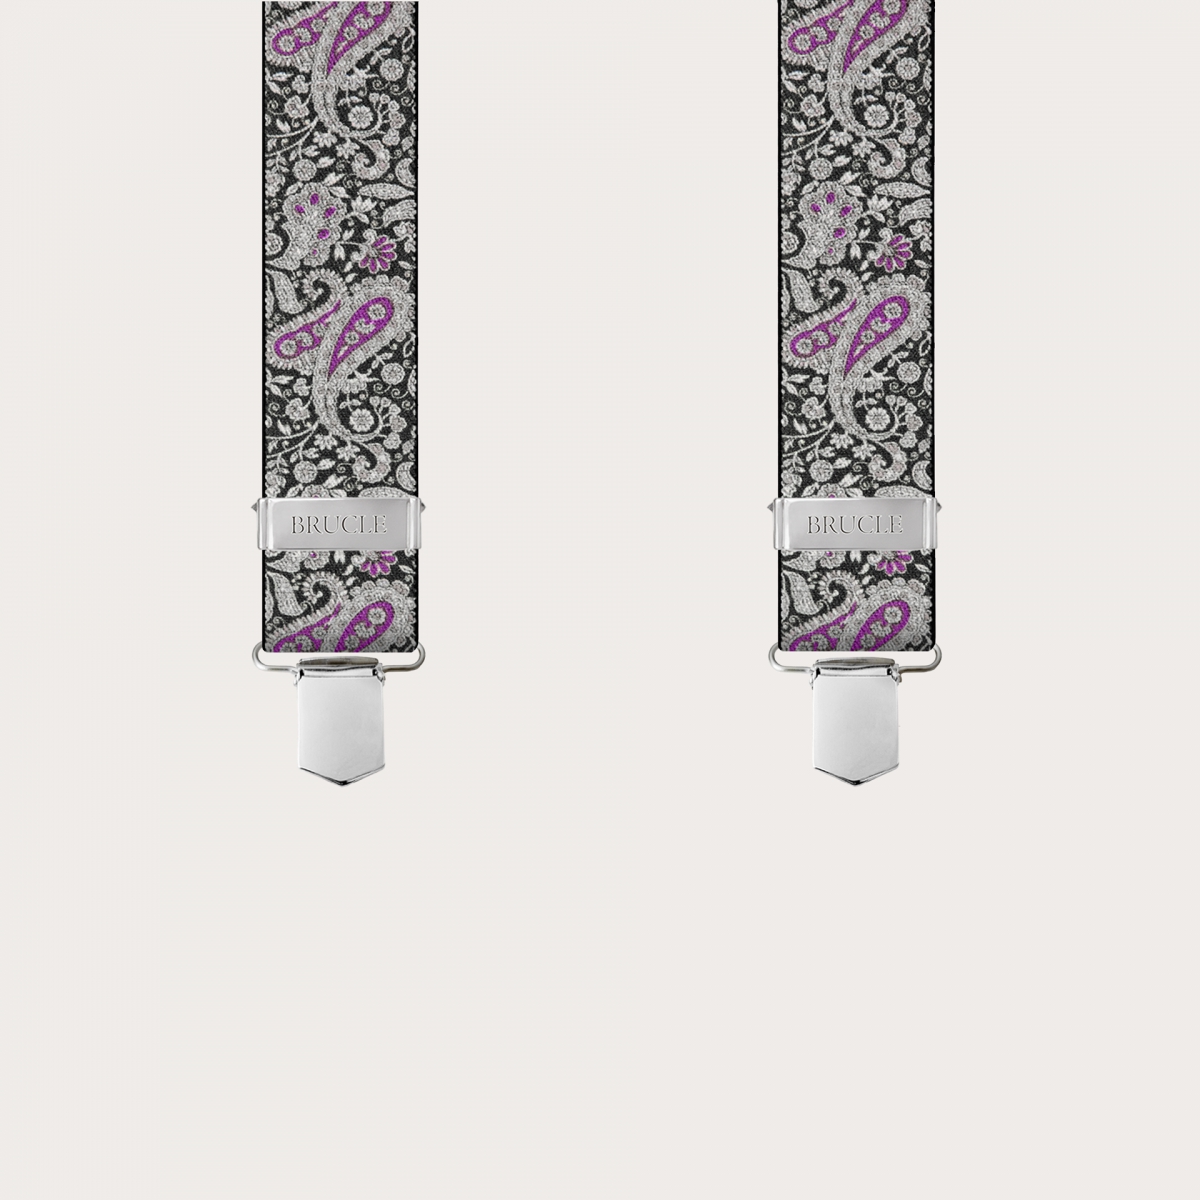 BRUCLE Hosenträger mit Clips in schwarz-violettes Kaschmirmuster